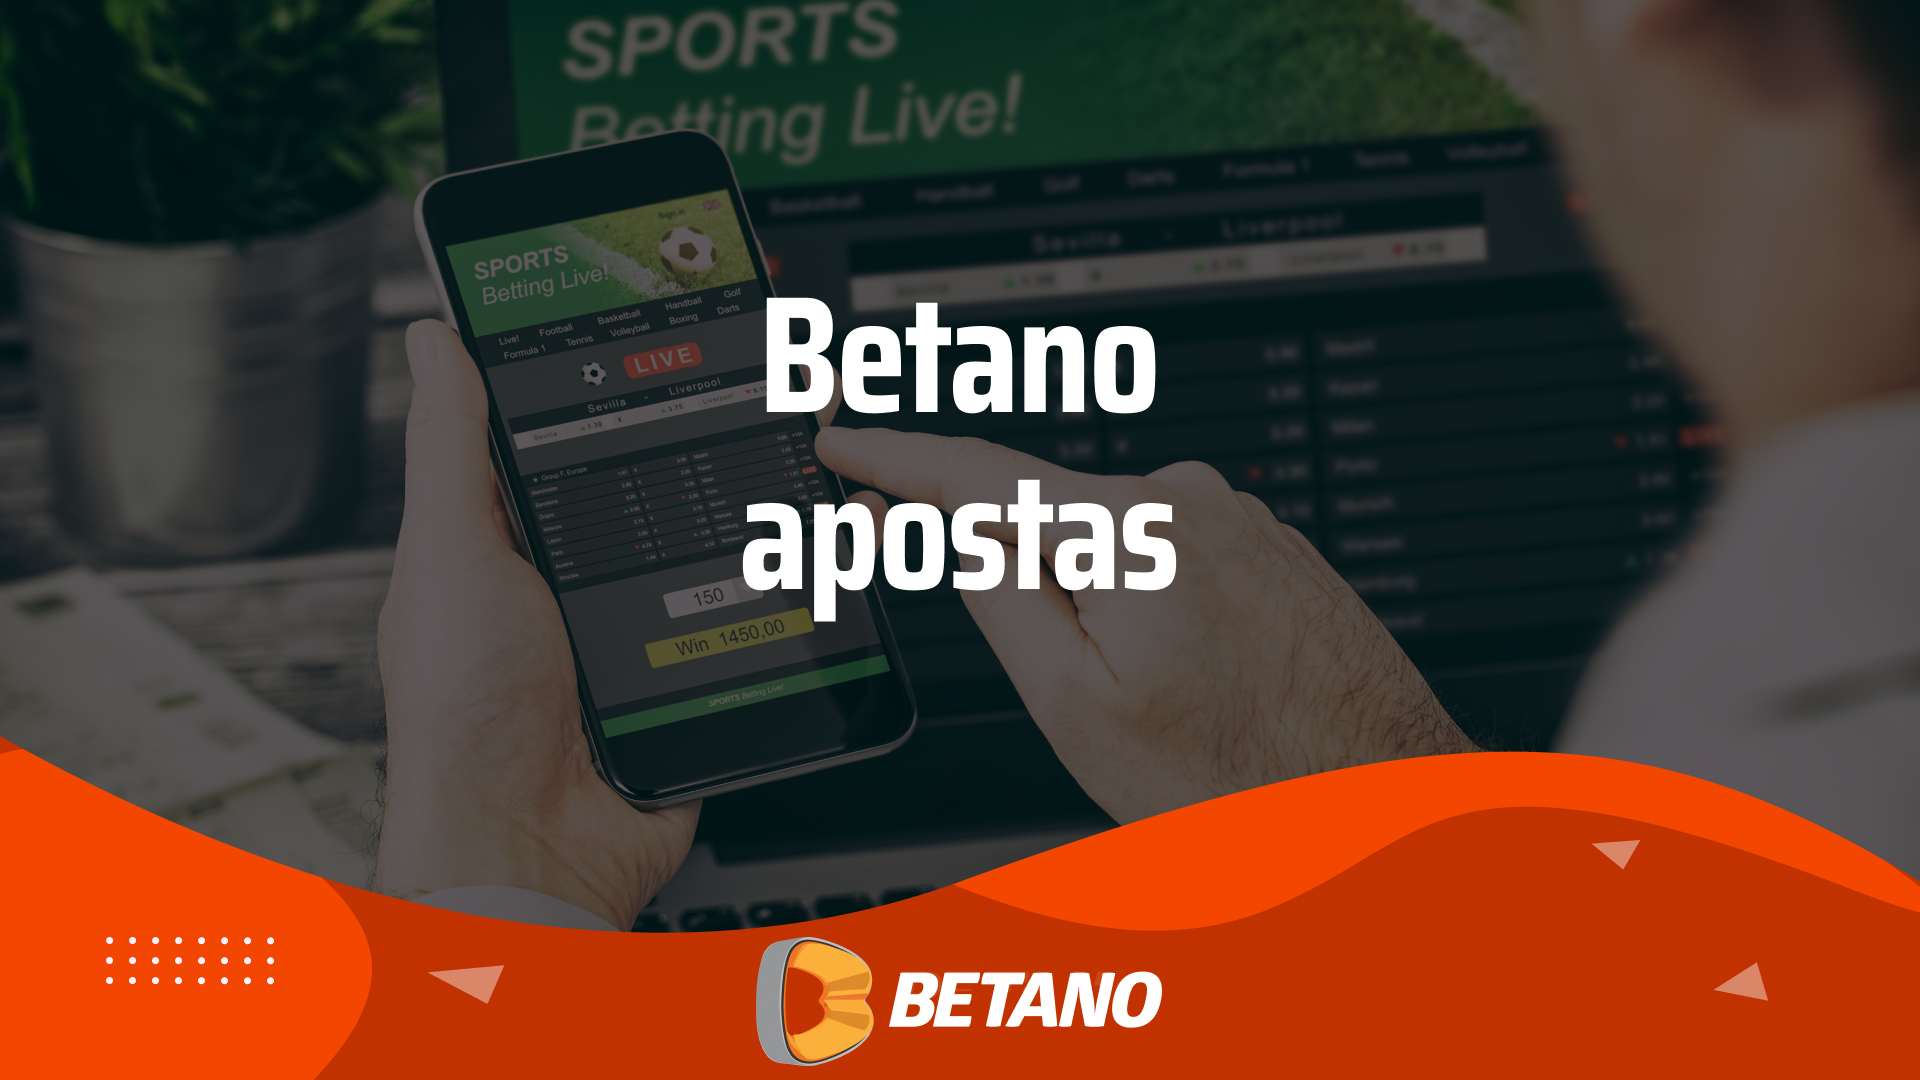 Betano apostas - Betano Apostas ([BONUS operateur="Month"/] [BONUS operateur="Year"/]) - Apostas ao Vivo e Streaming Online